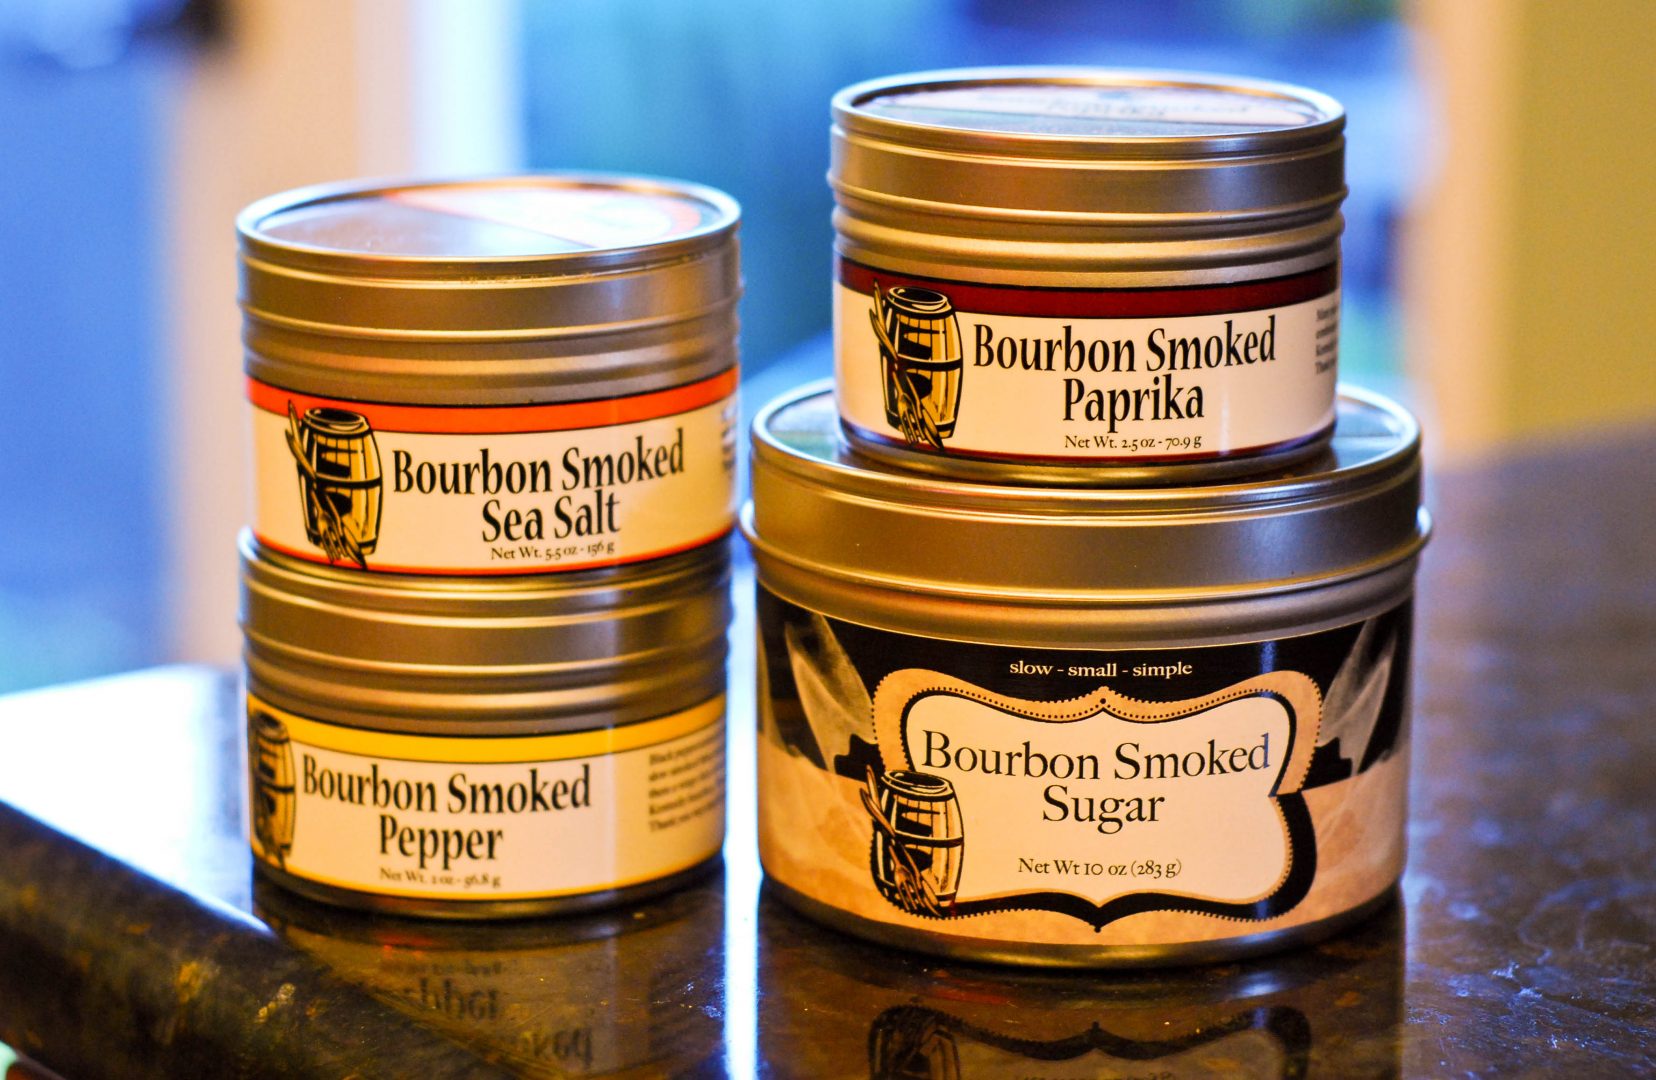 Bourbon Barrel Smoked Sea Salt, Peppercorn, Paprika and Sugar BBQ Rub